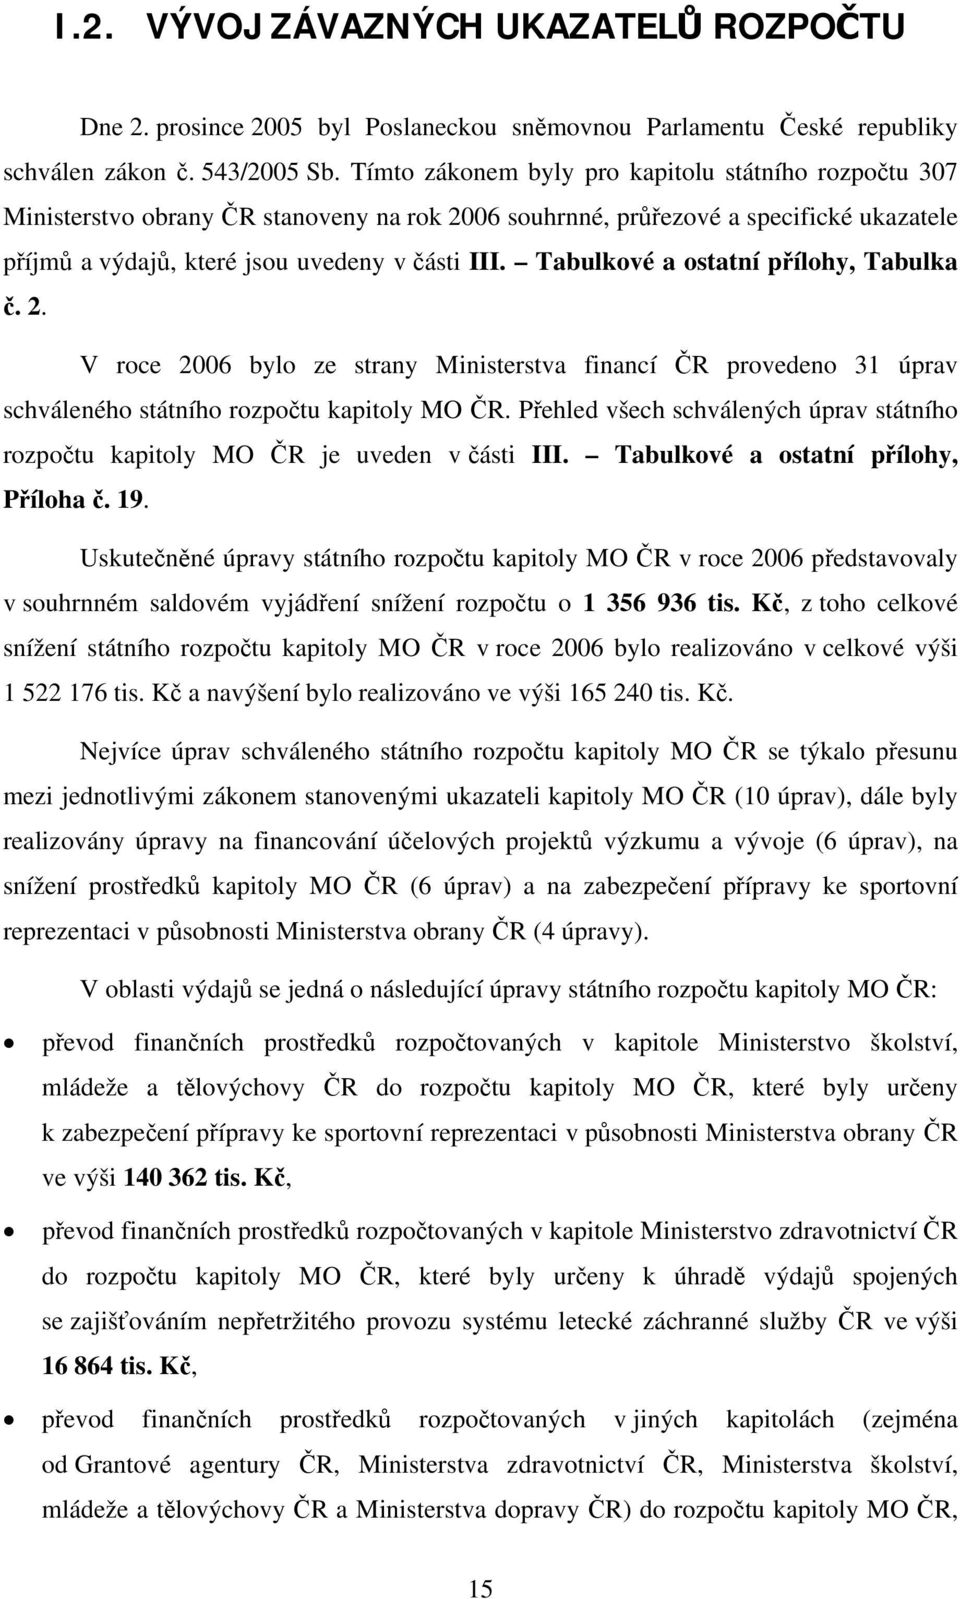 Tabulkové a ostatní přílohy, Tabulka č. 2. V roce 2006 bylo ze strany Ministerstva financí ČR provedeno 31 úprav schváleného státního rozpočtu kapitoly MO ČR.